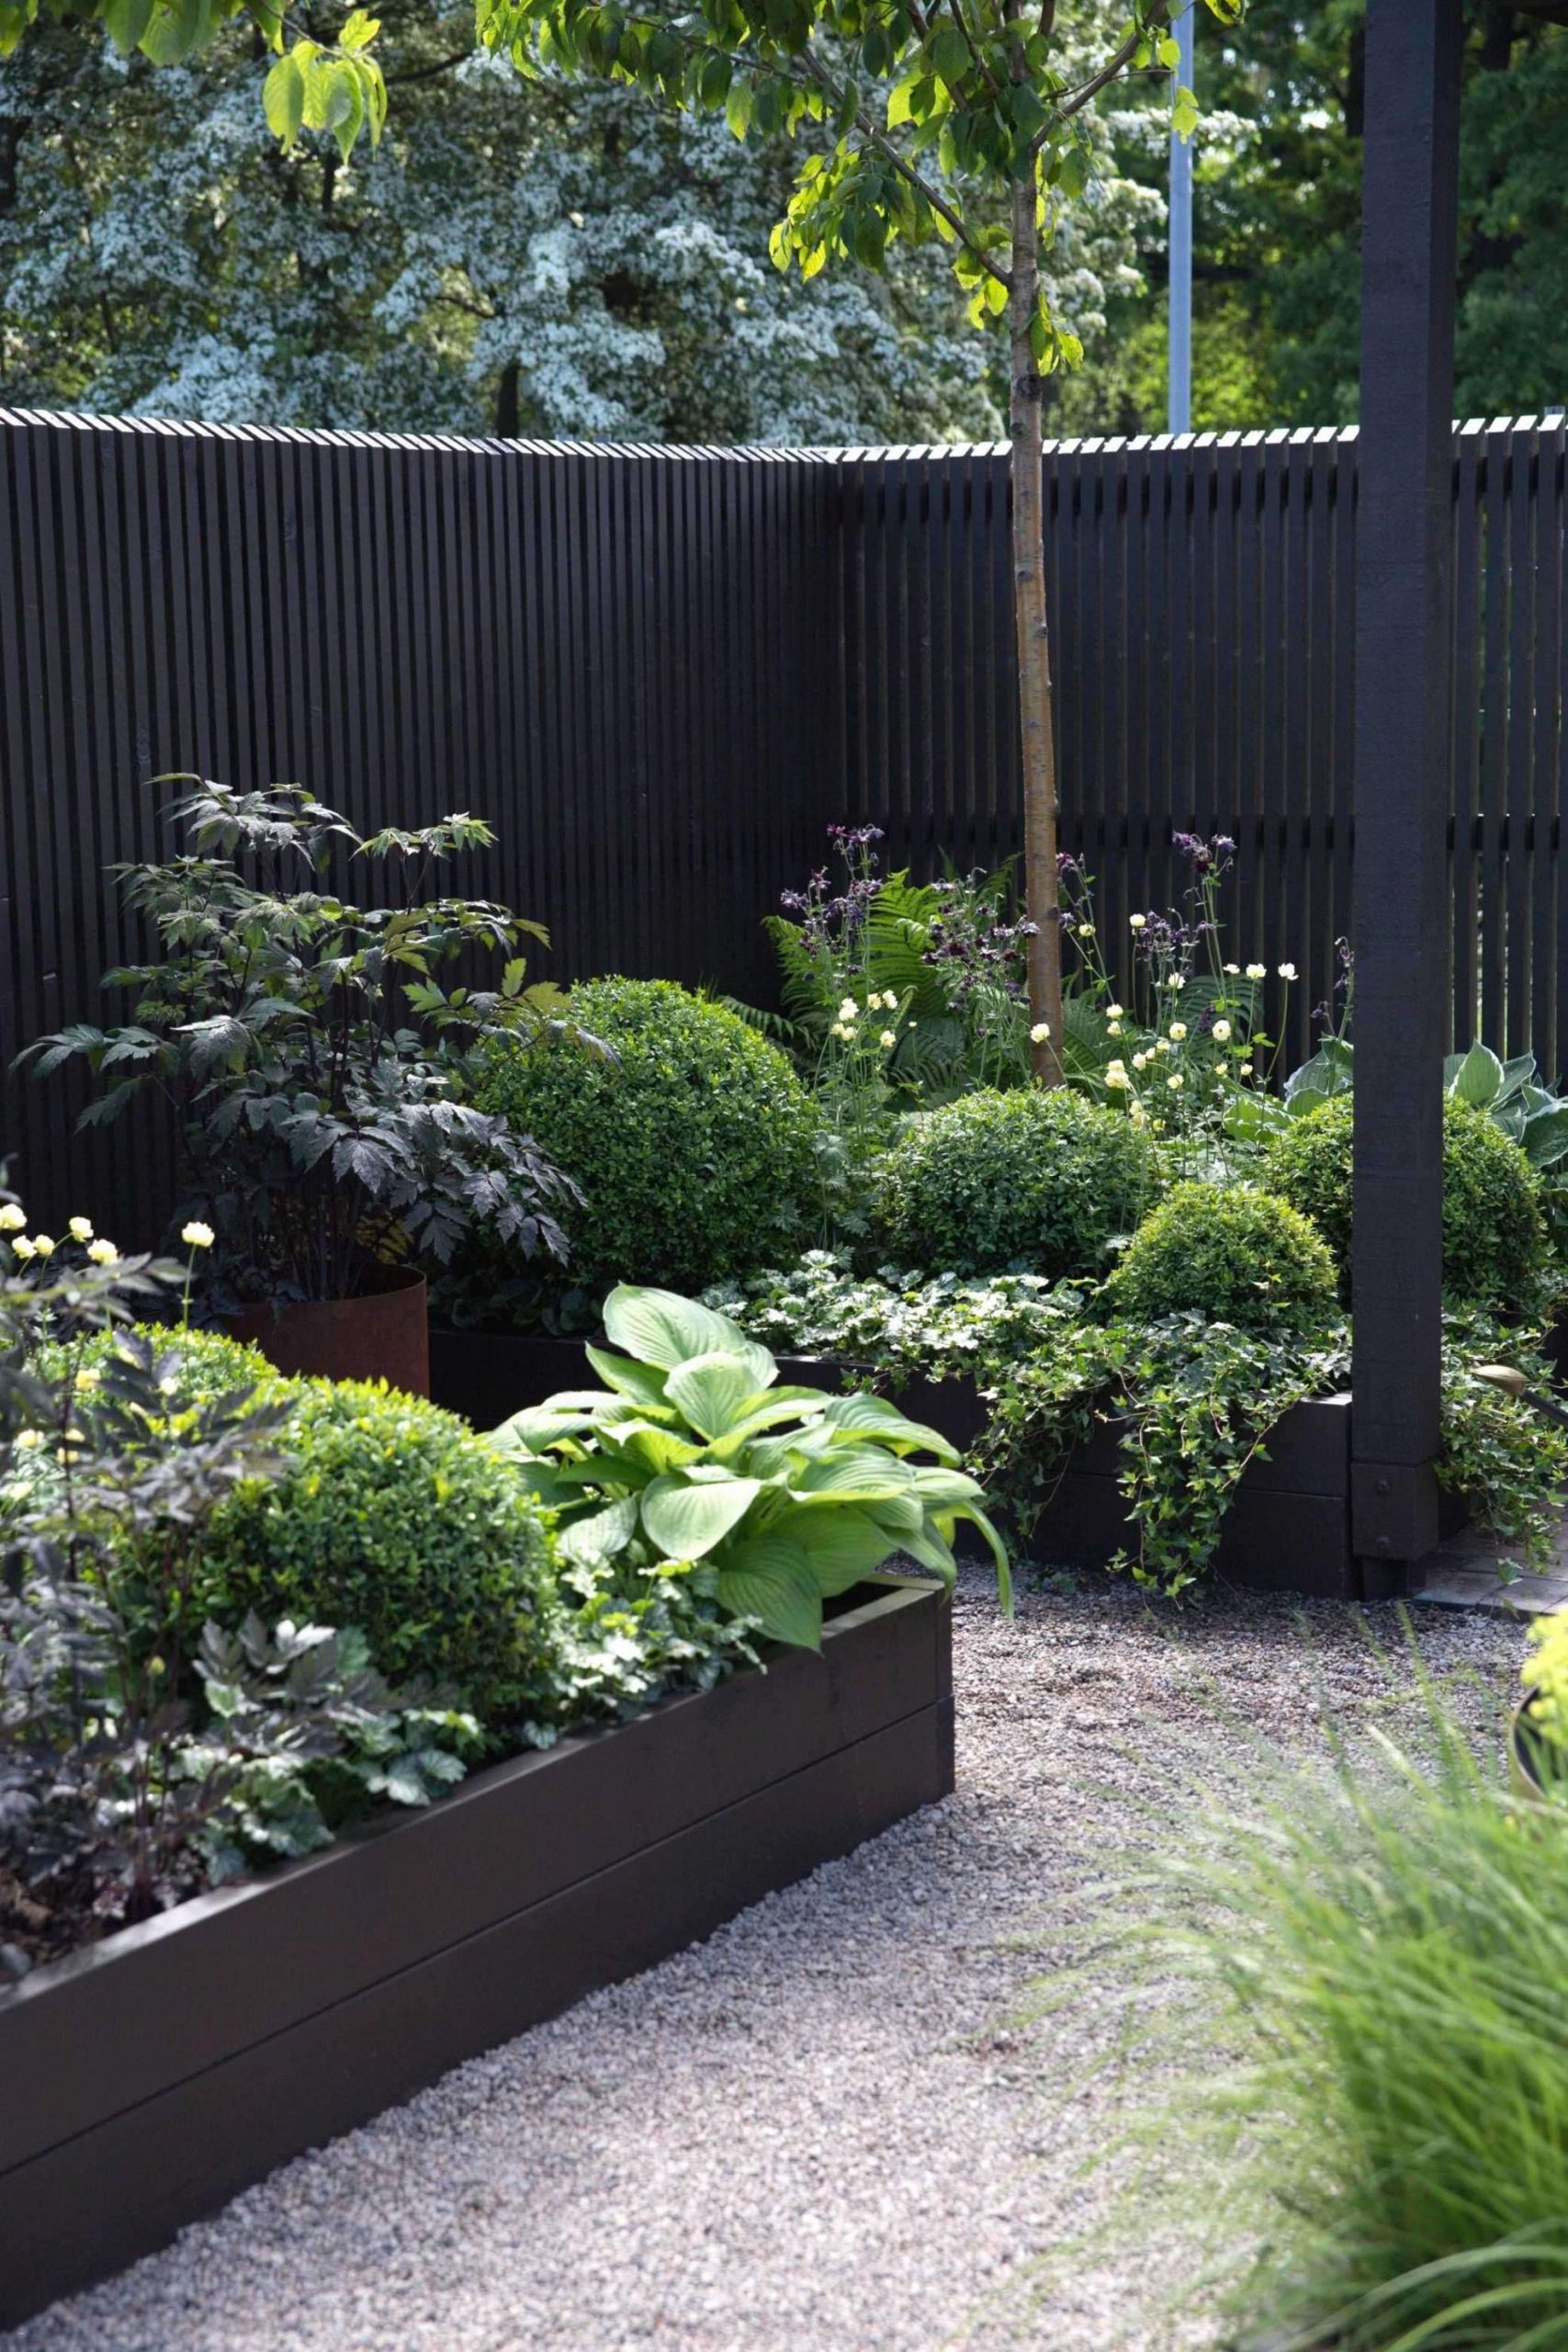 Neulich Im Garten Best Of Unkraut Garten Neu Spiegel Im Garten — Temobardz Home Blog